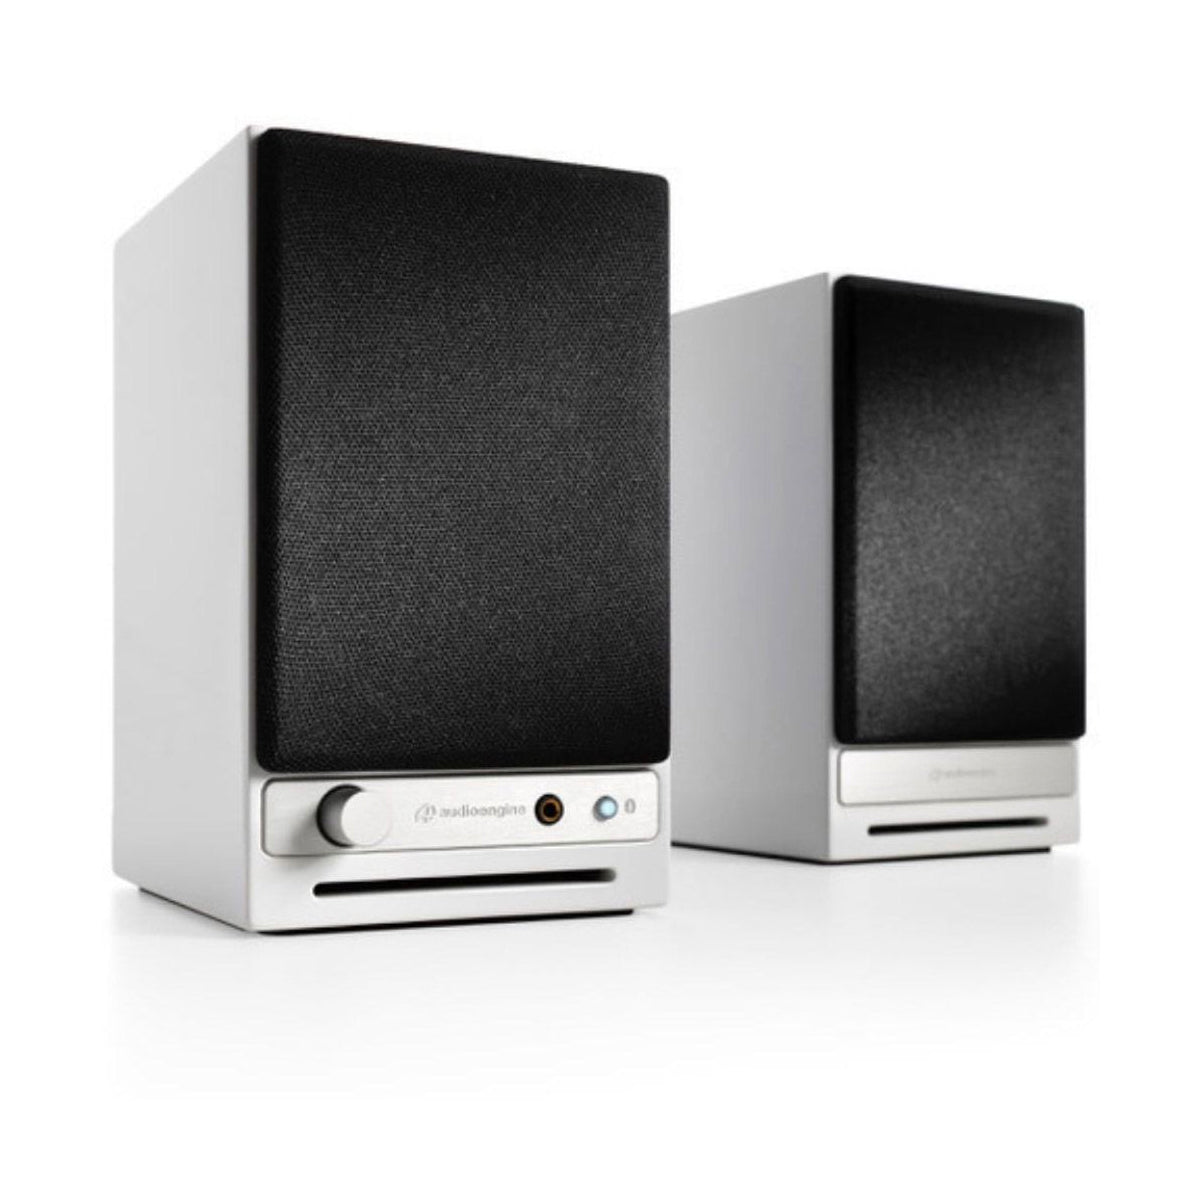 Audioengine HD3 Active Wireless Speakers - Gloss White - The Audio Experts